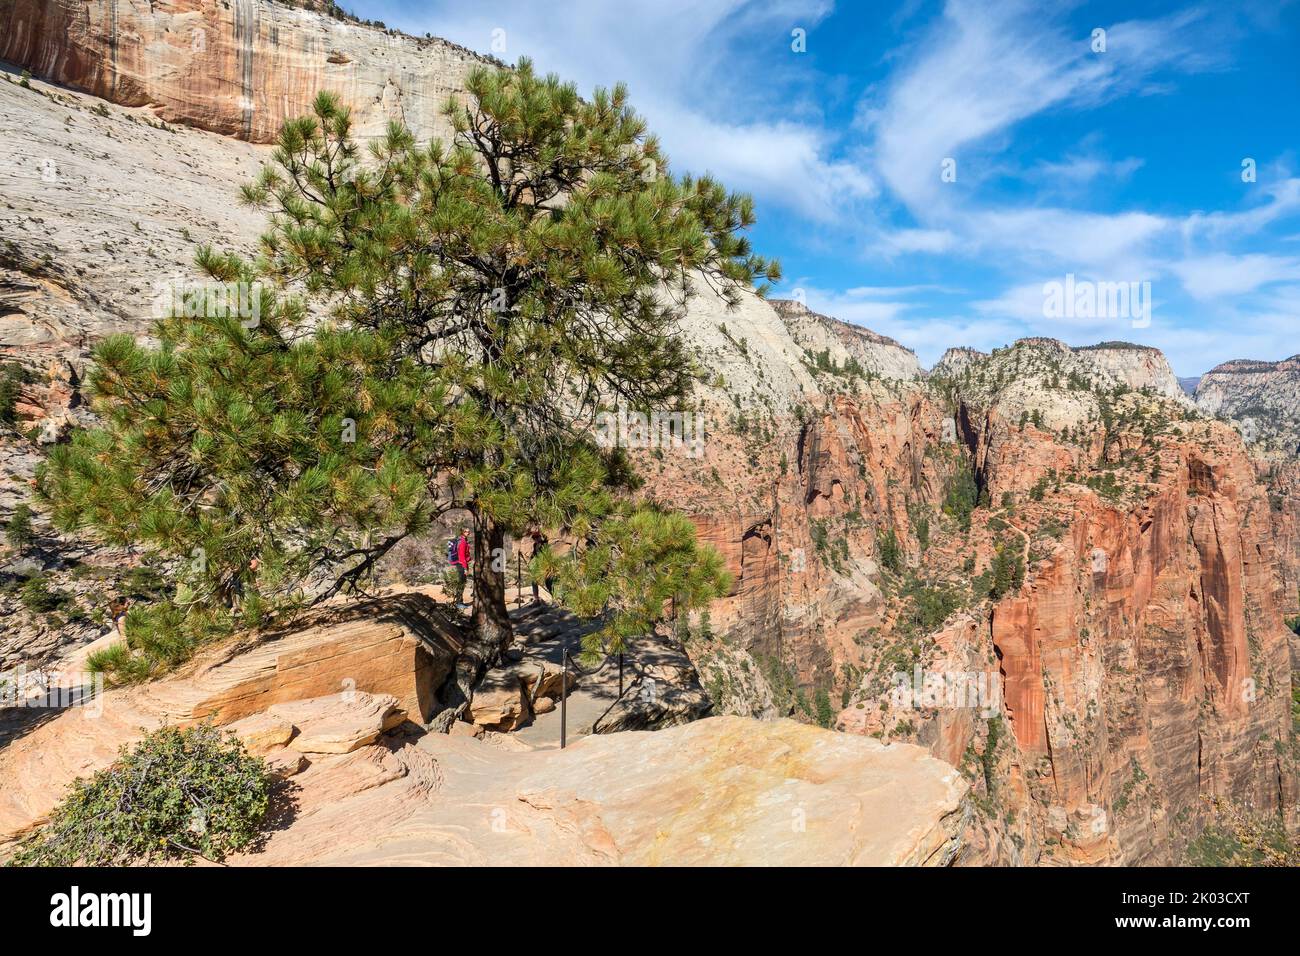 El Parque Nacional Zion está ubicado en el suroeste de Utah en la frontera con Arizona. Tiene una superficie de 579 kö² y se encuentra entre 1128 m y 2660 m de altitud. Pino independiente en Angels Landing Foto de stock